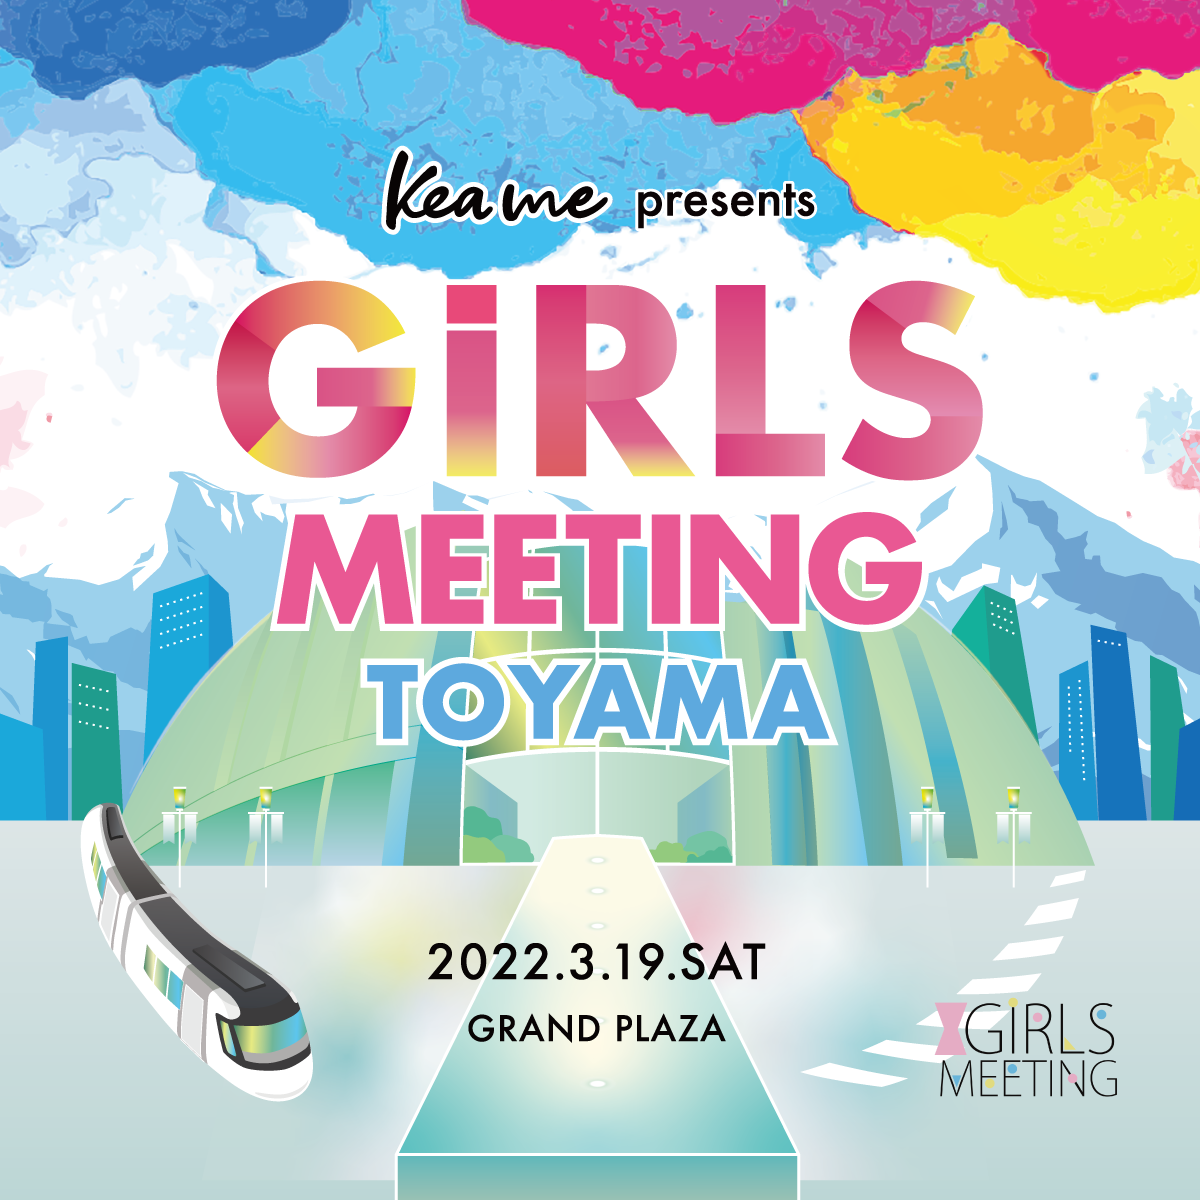 GIRLS MEETING TOYAMA